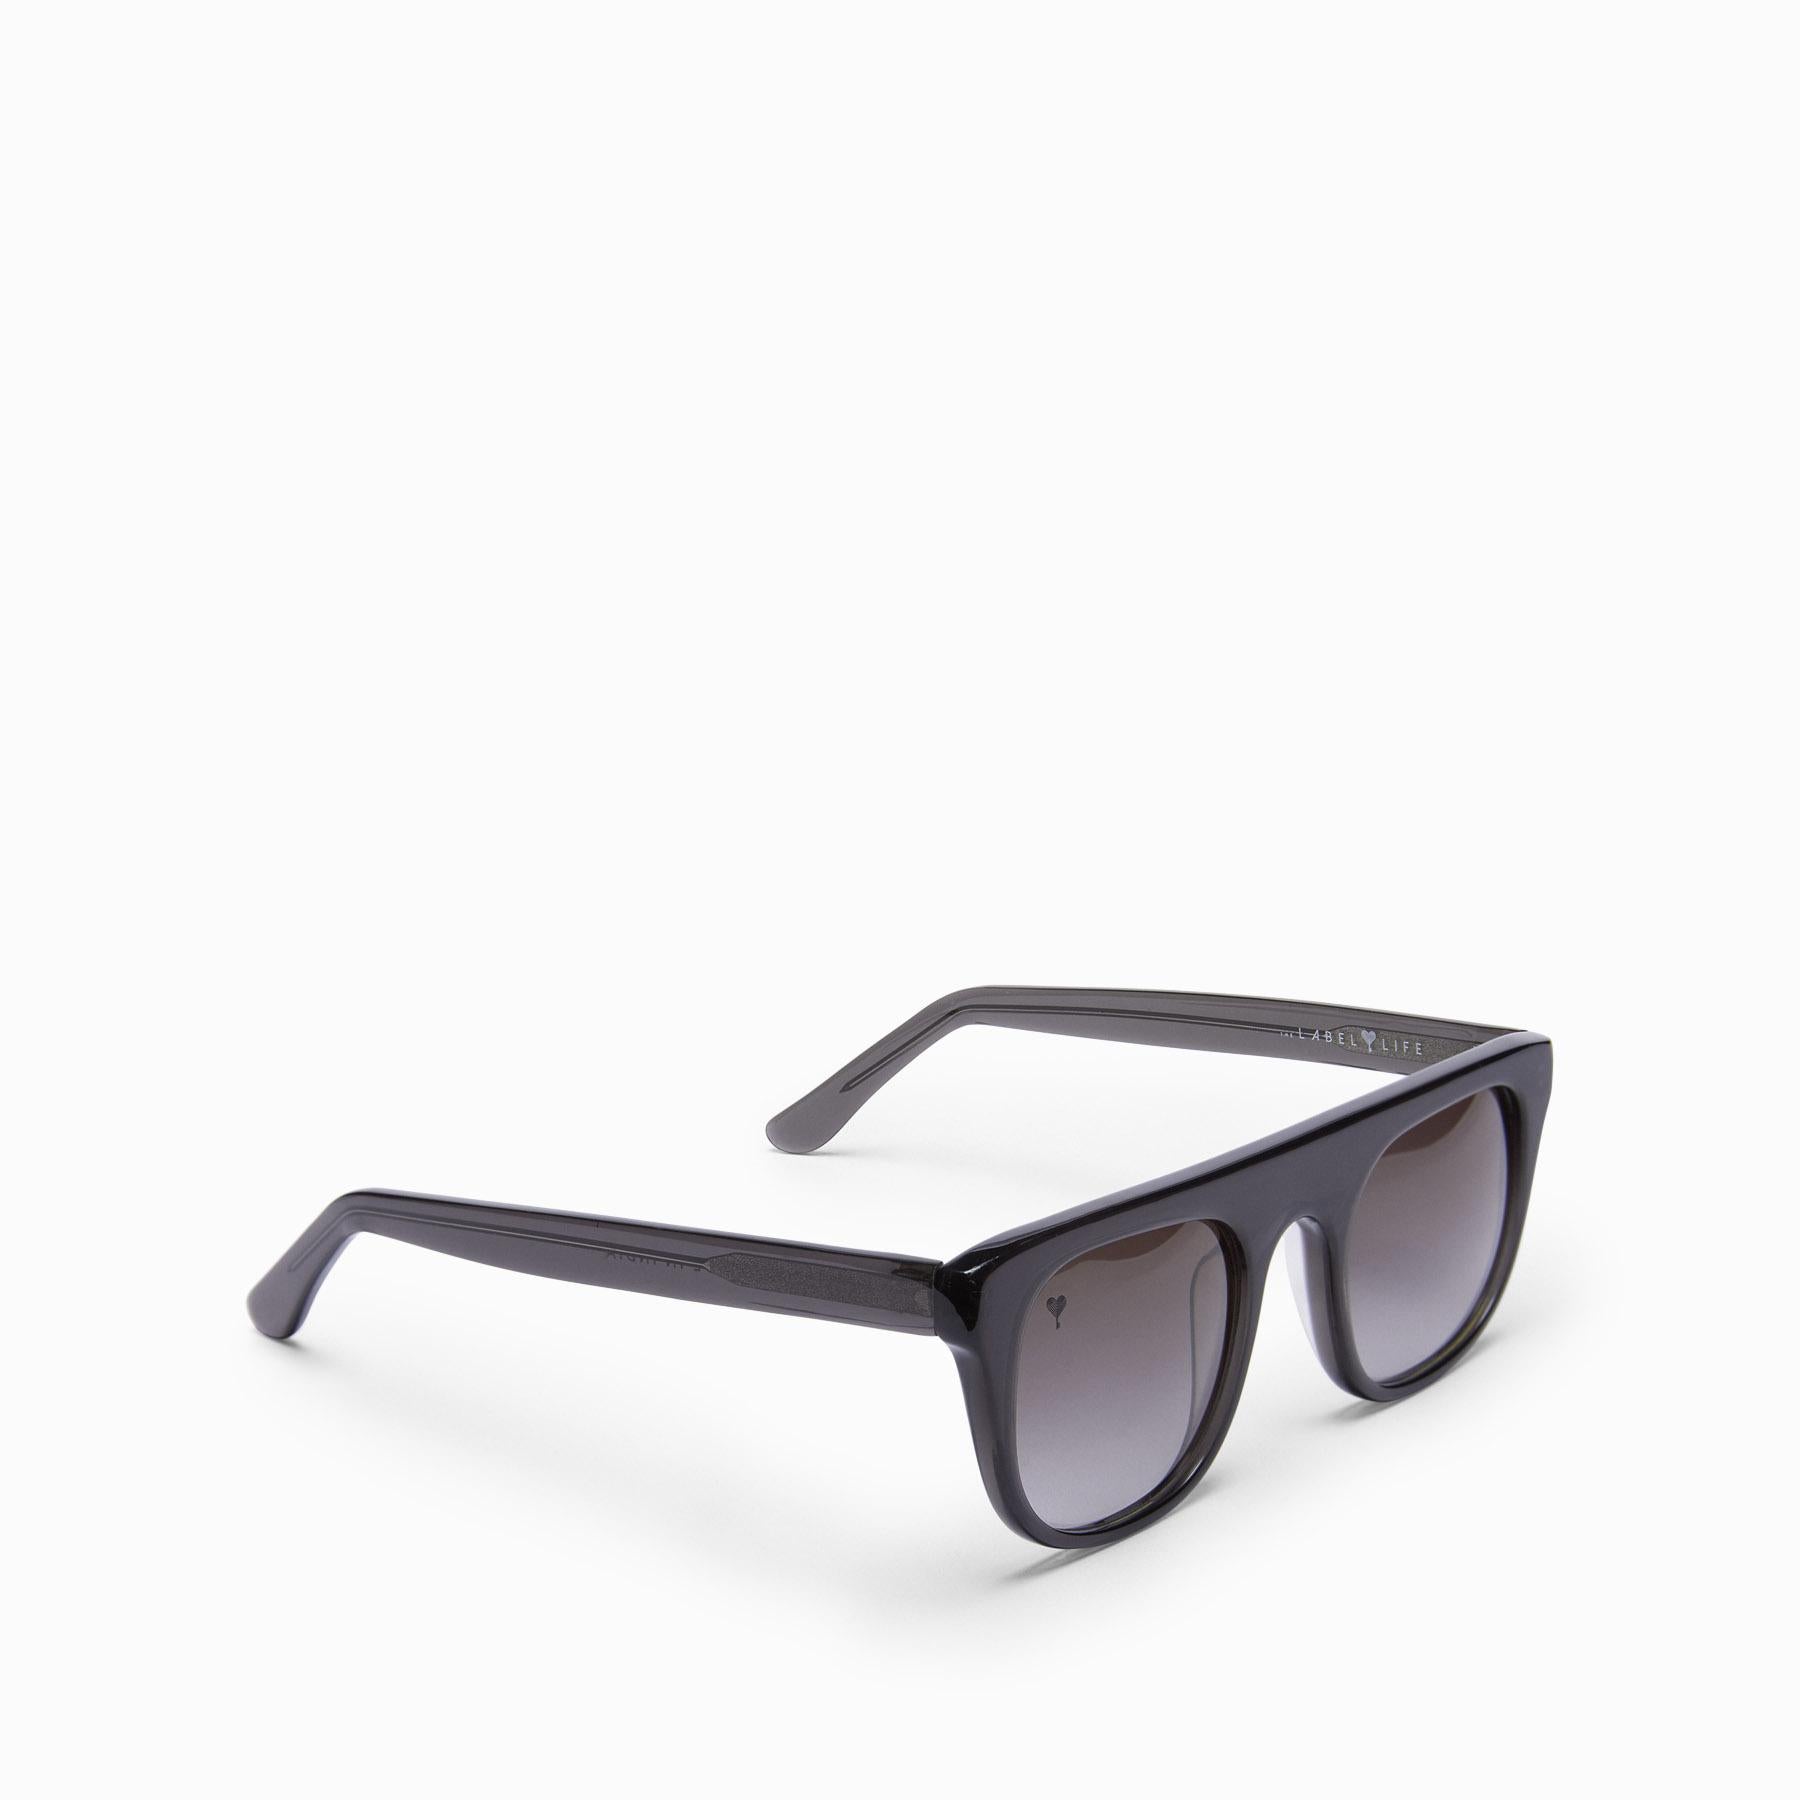 Black Square Bridge Sunglasses